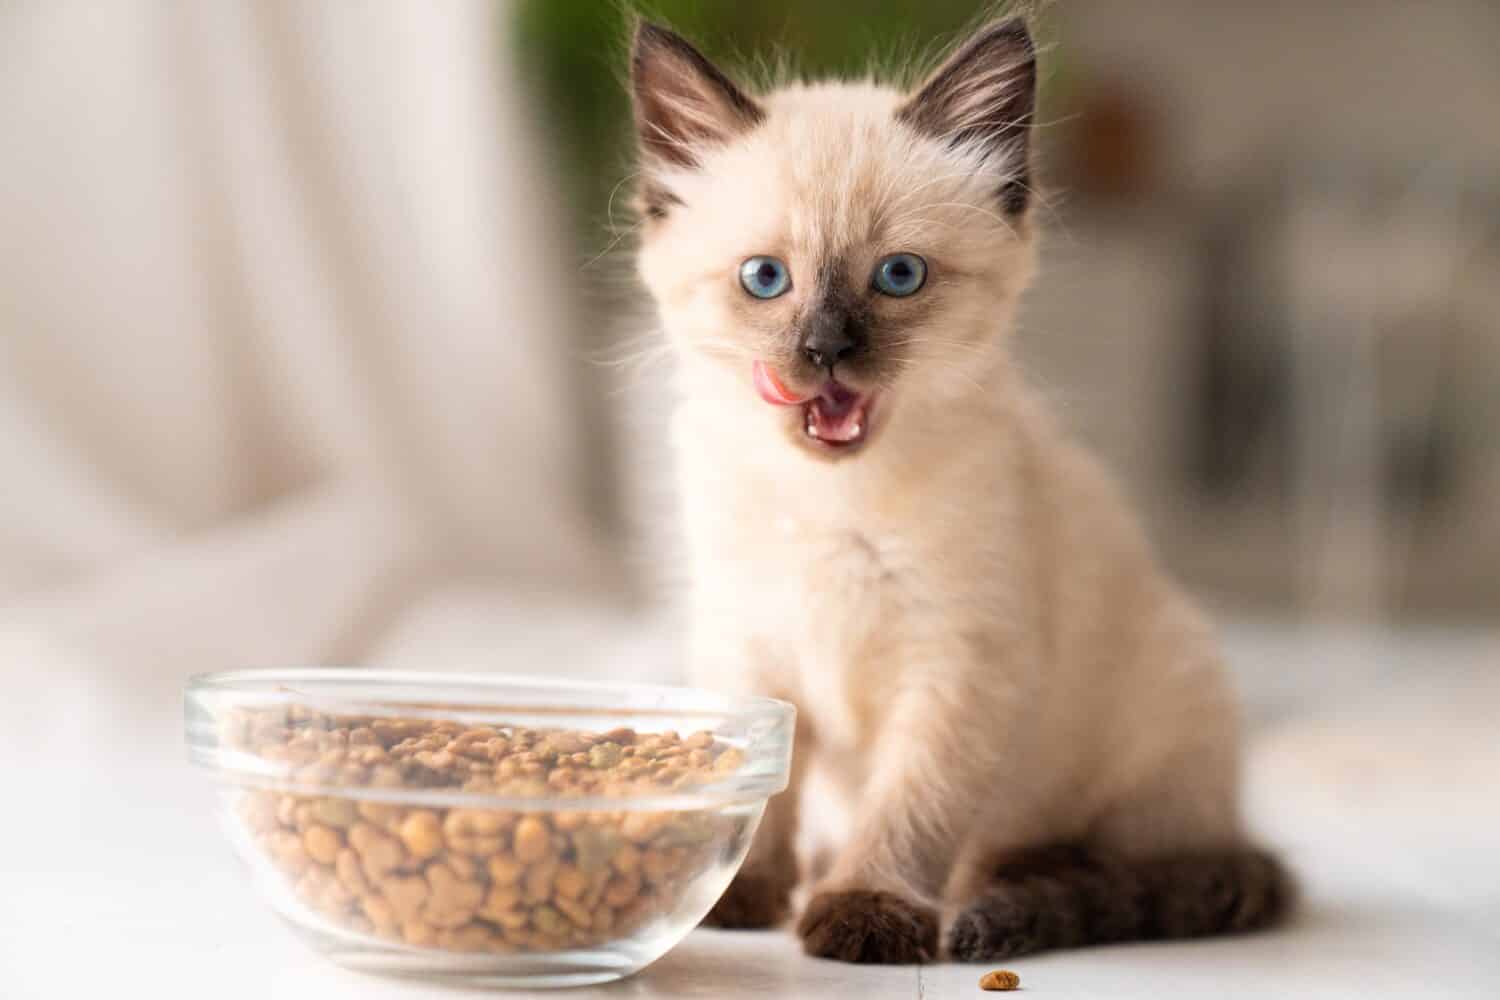 Divertente gattino birichino mangia cibo secco da una ciotola.  Il gattino lecca, pasto delizioso.  Razza di gatto siamese o tailandese.  Foto di alta qualità